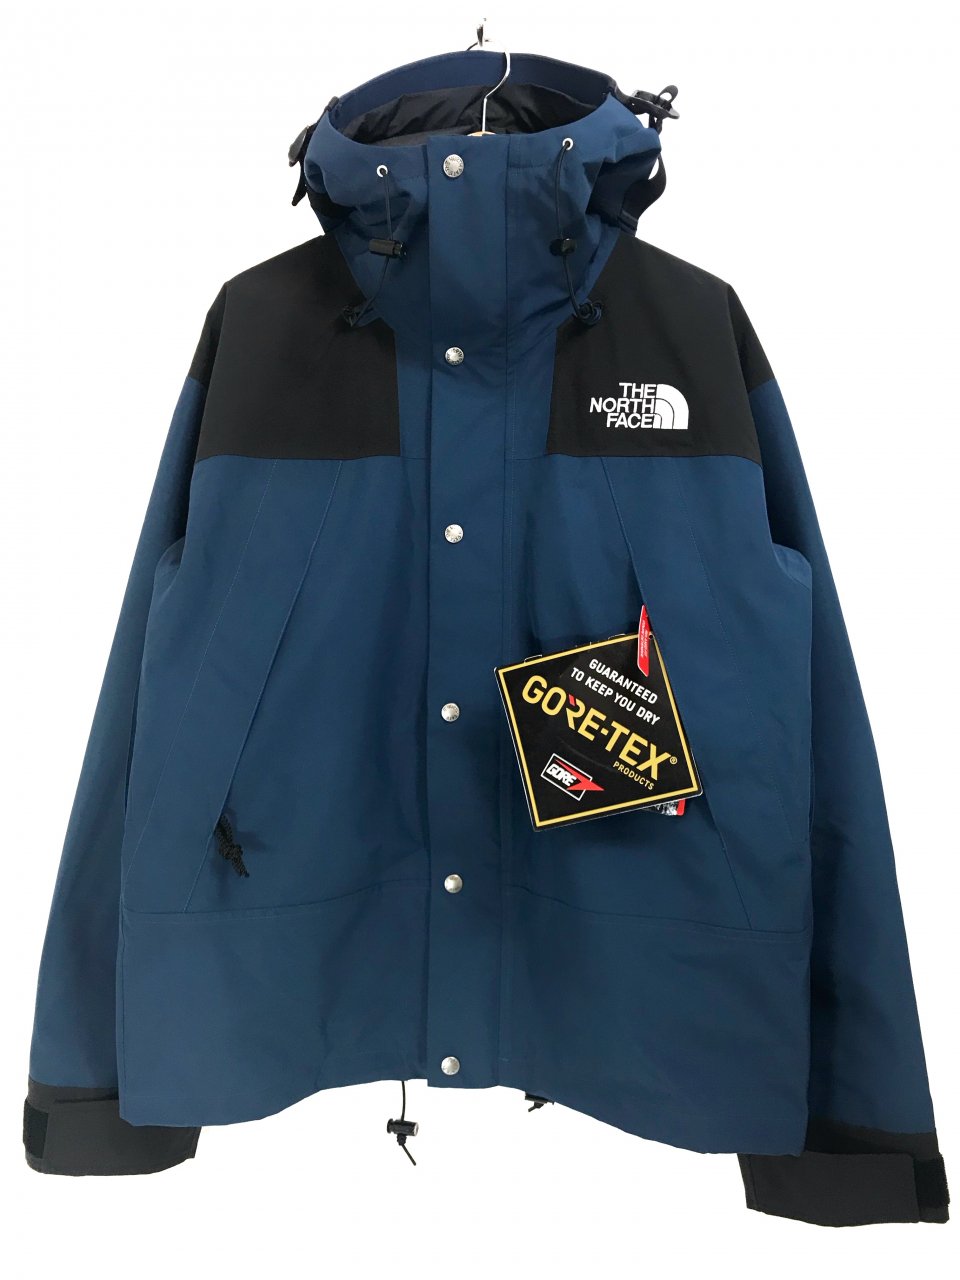 日本未発売 THE NORTH FACE 1990 Mountain Jacket GORE-TEX NAVY